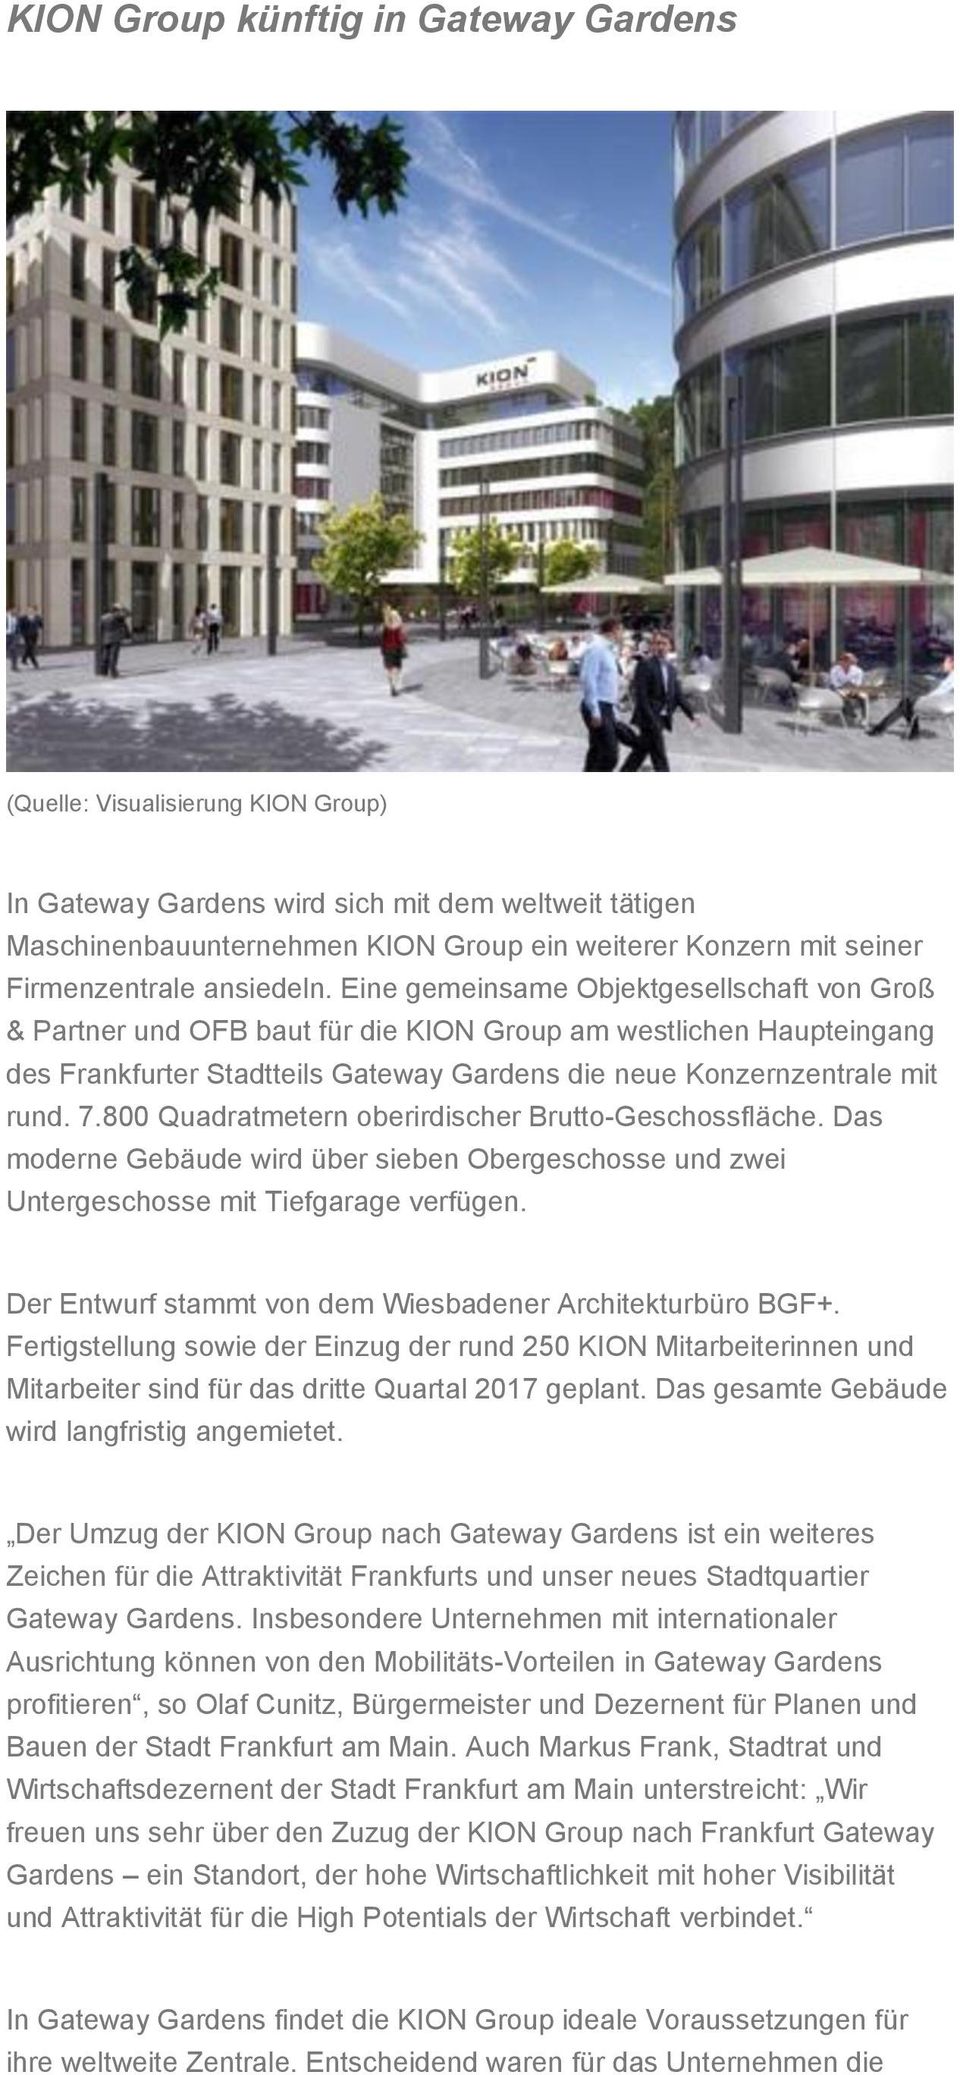 Eine gemeinsame Objektgesellschaft von Groß & Partner und OFB baut für die KION Group am westlichen Haupteingang des Frankfurter Stadtteils Gateway Gardens die neue Konzernzentrale mit rund. 7.